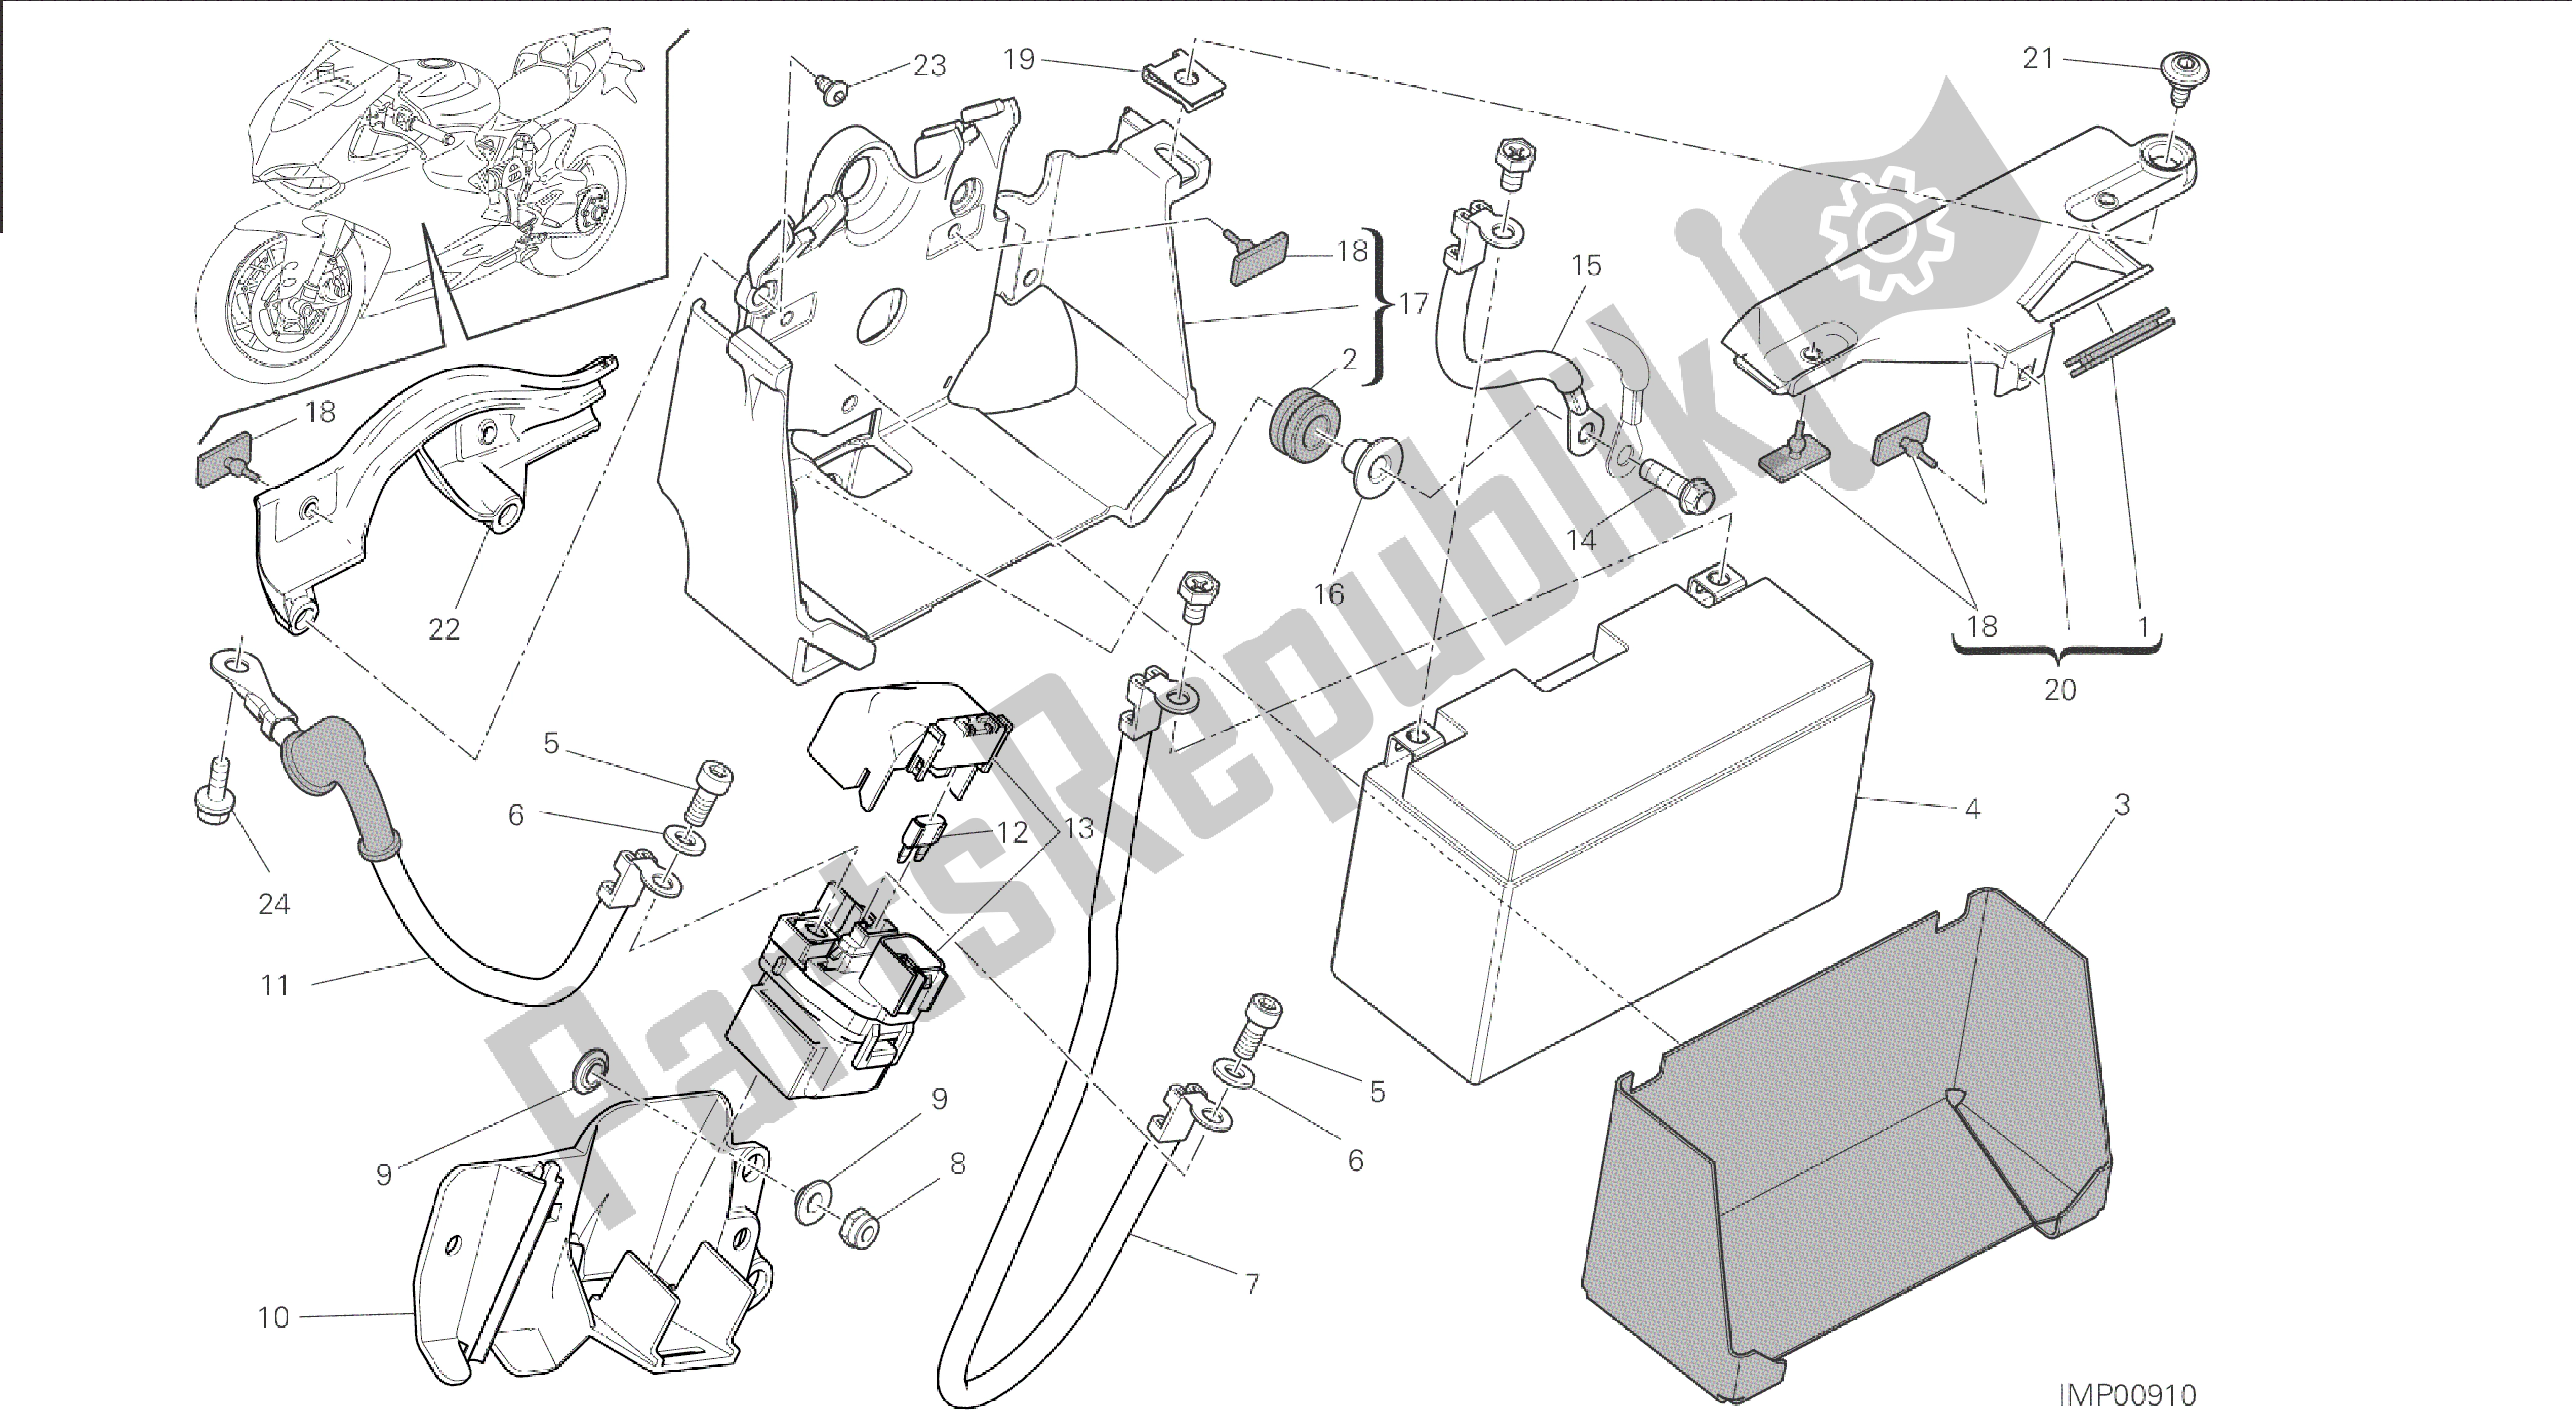 Todas las partes para Dibujo 18a - Soporte De Batería [mod: 1199 R; Xst: Aus, Eur, Fra, Jap, Twn] Group Electric de Ducati Panigale 1198 2015